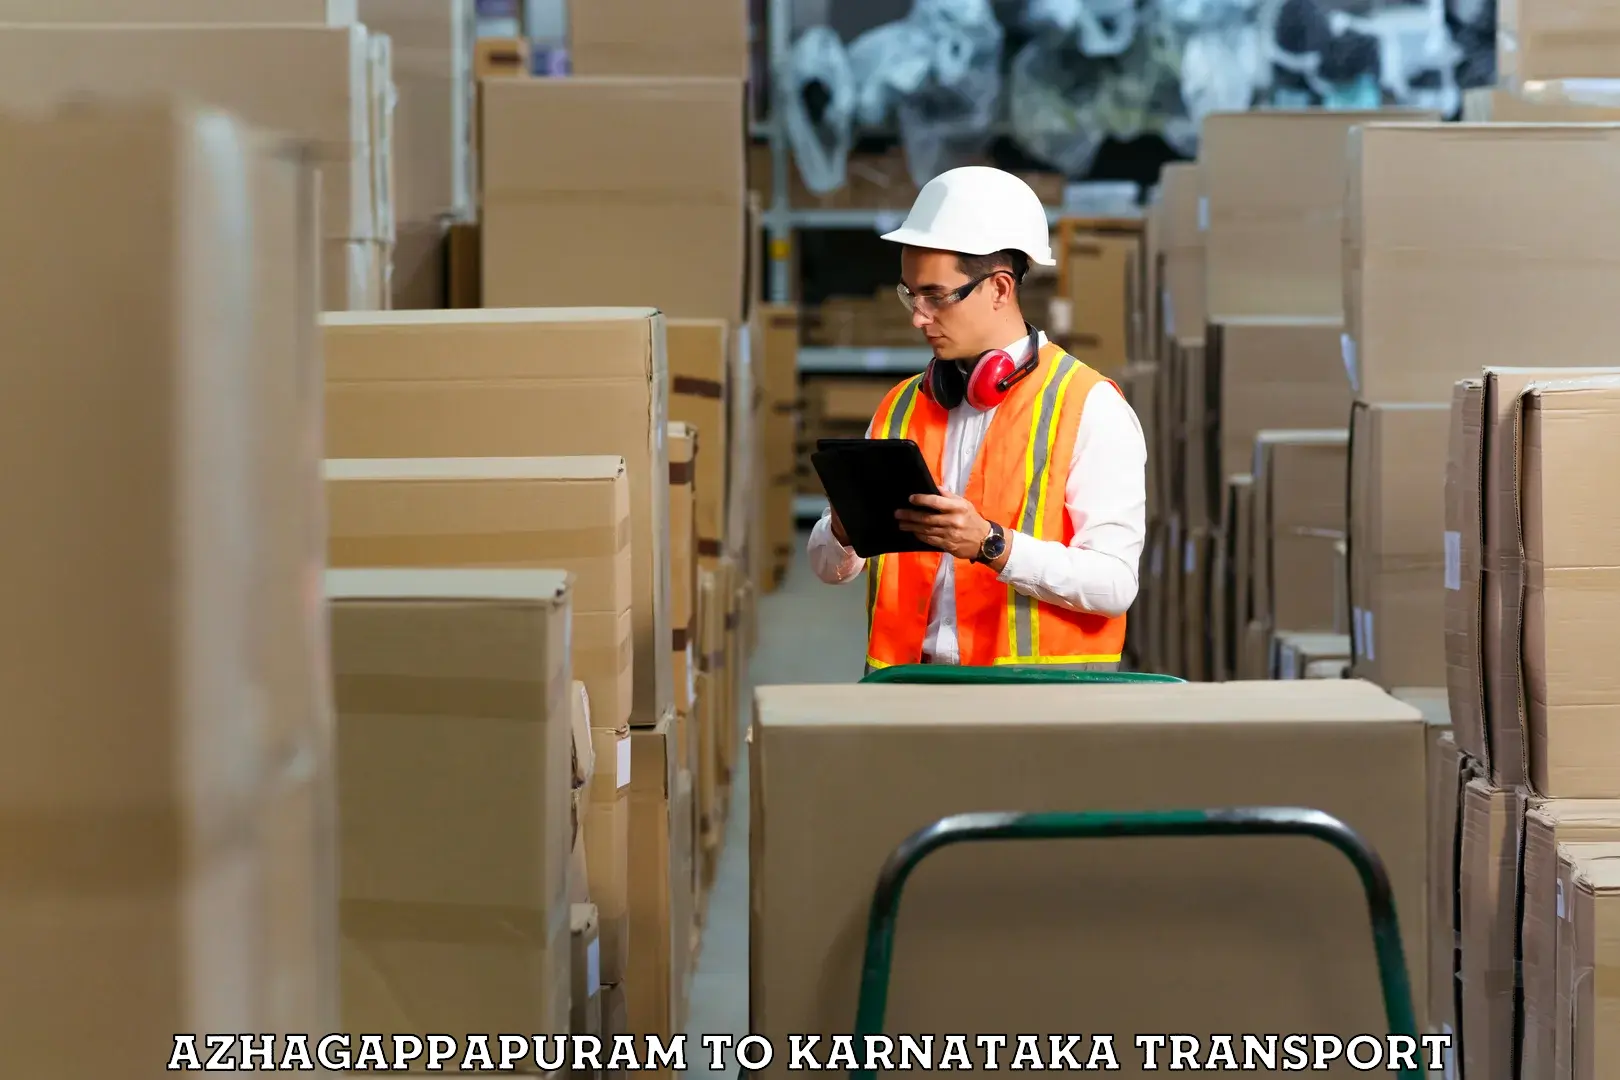 Cargo transport services in Azhagappapuram to Karkala